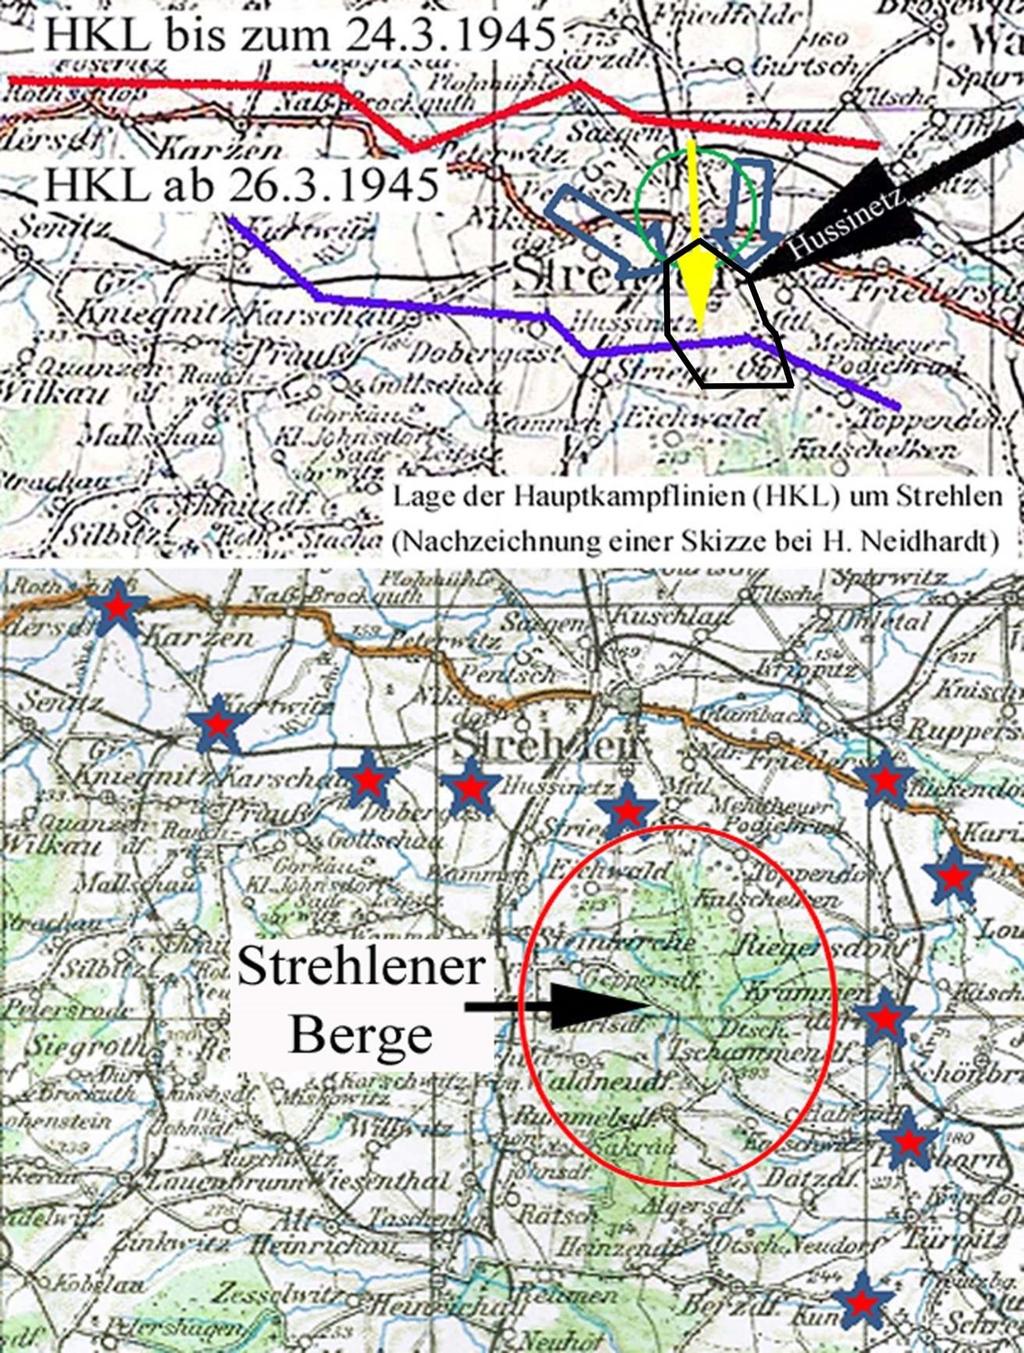 Bild 2: Die HKL-Lagen am 24. und am 26. März 1945 im oberen Teilbild wurden vom Autor aus einer Skizze von H.